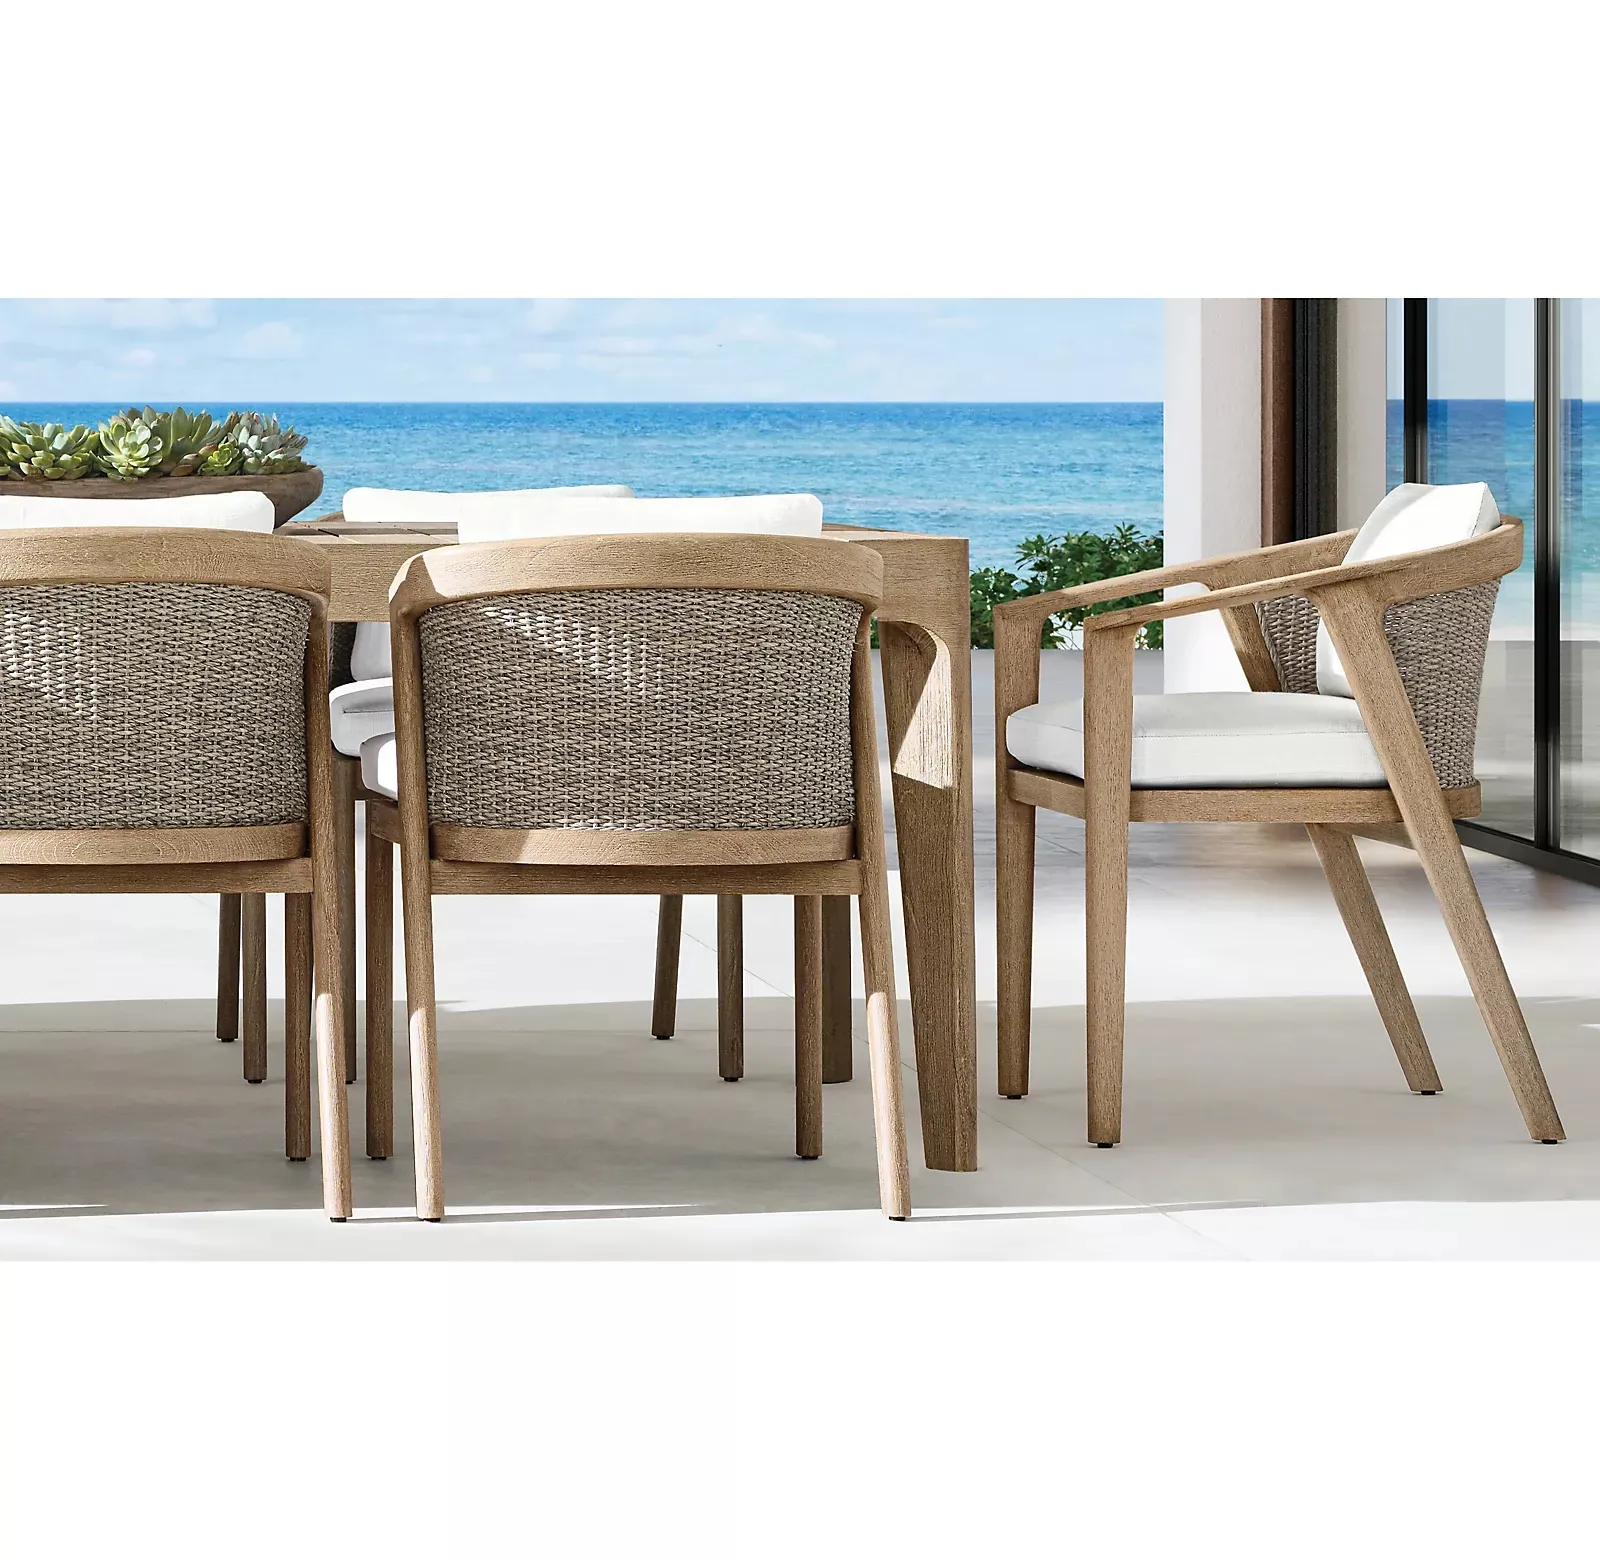 Haute qualité cour patio jardin à manger ensemble moderne en osier teck en plein air chaise et table